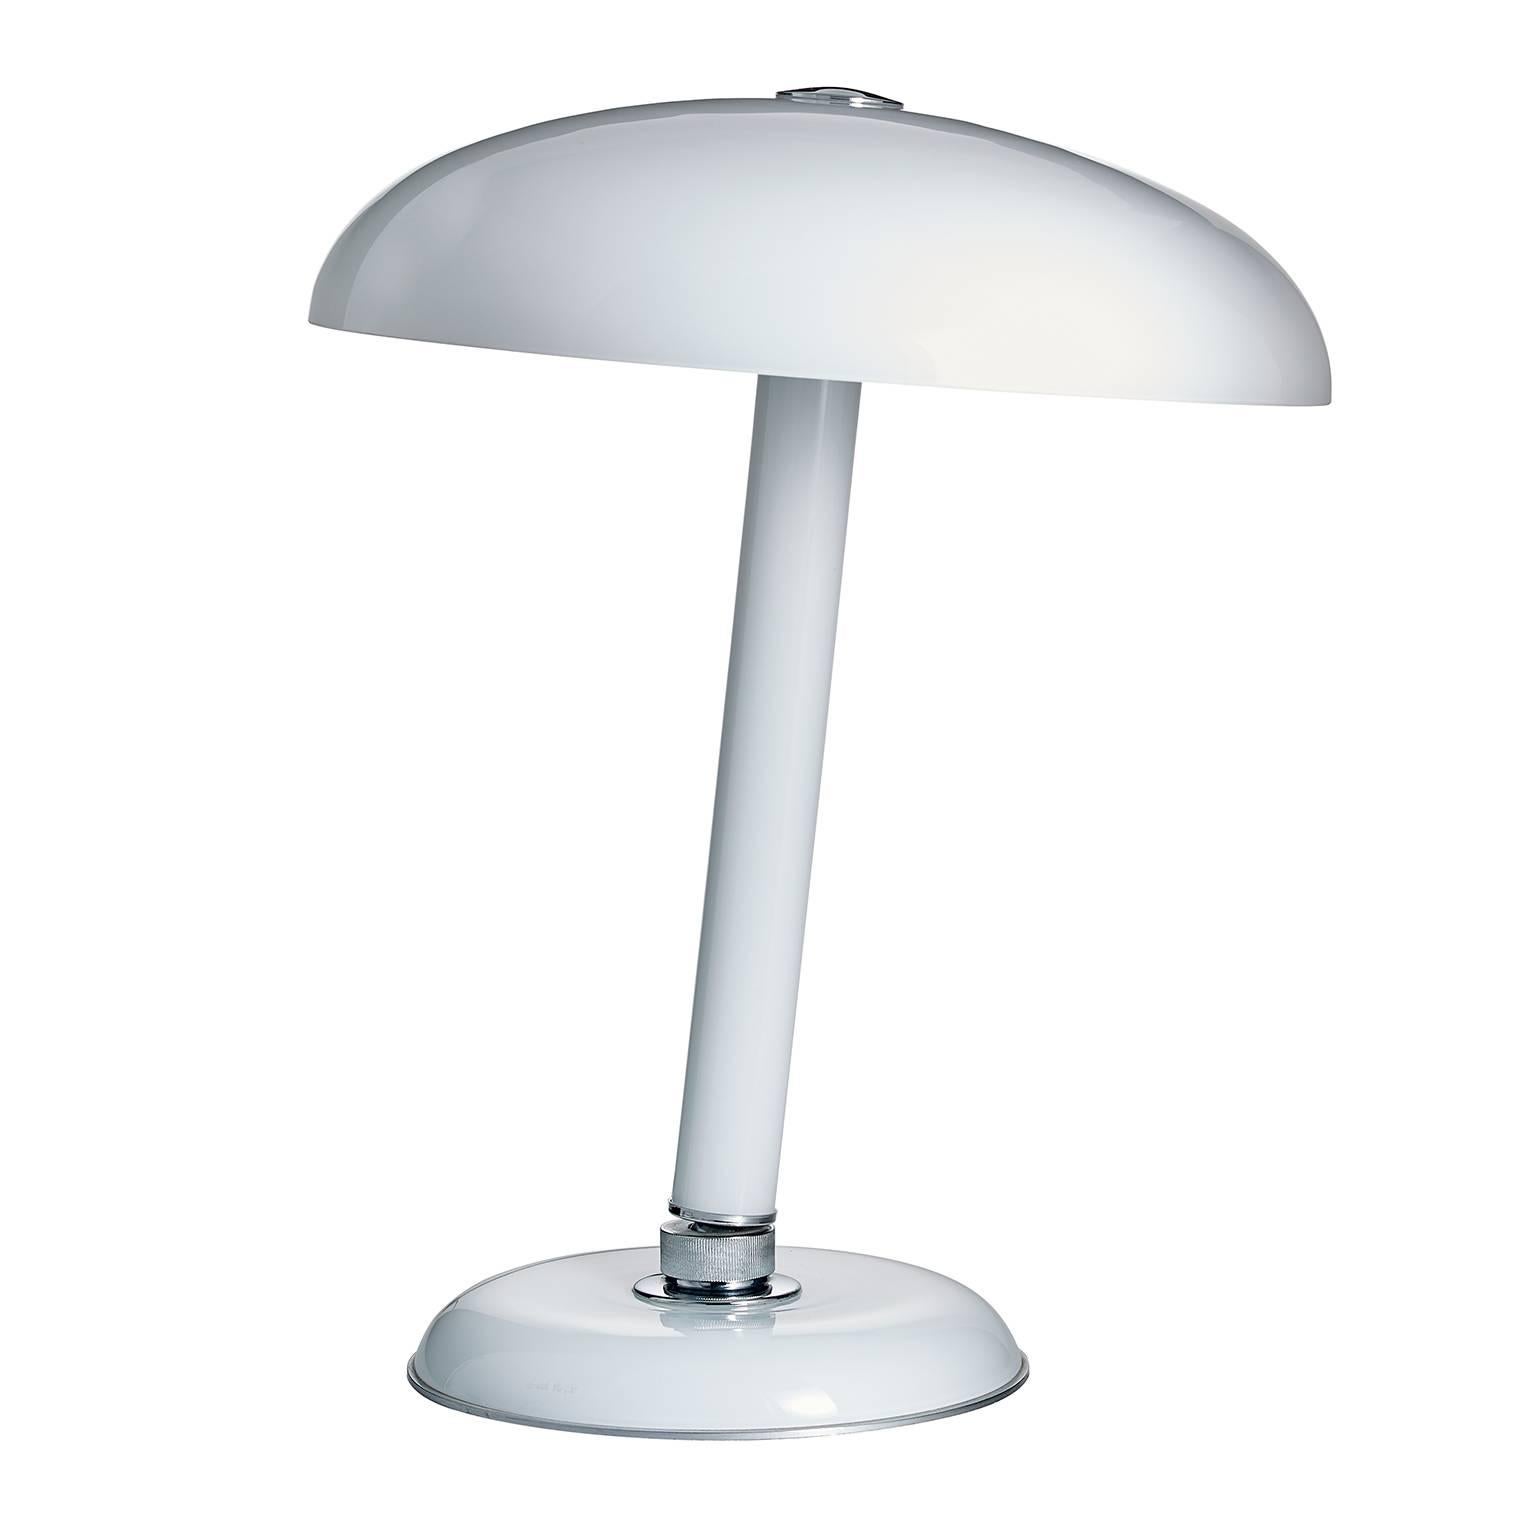 Snodo Carlo Moretti Contemporary Milk White Murano Glass Table Lamp